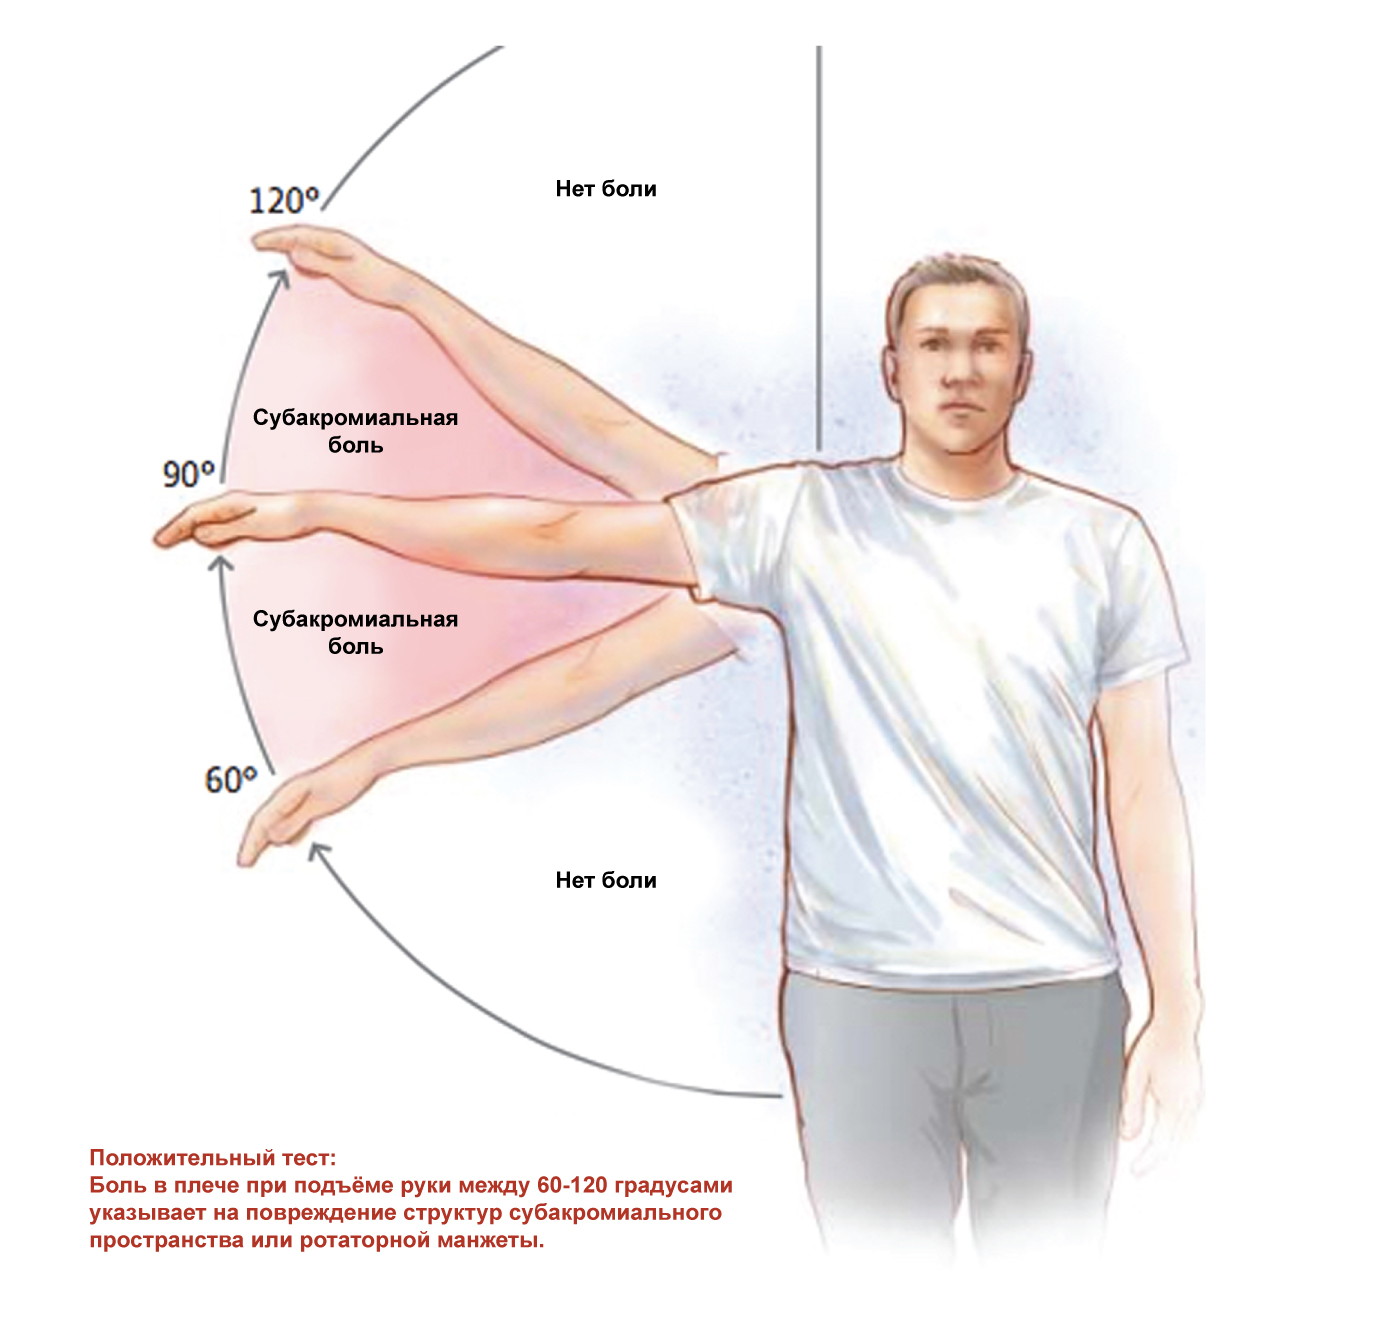 Почему левое больше правого. Субакромиальный синдром плечевого сустава ЛФК. ЛФК при импиджмент синдром правого плечевого сустава. Субакромиальный болевой синдром. Лечебная физкультура при импинджмент синдроме плечевого сустава.